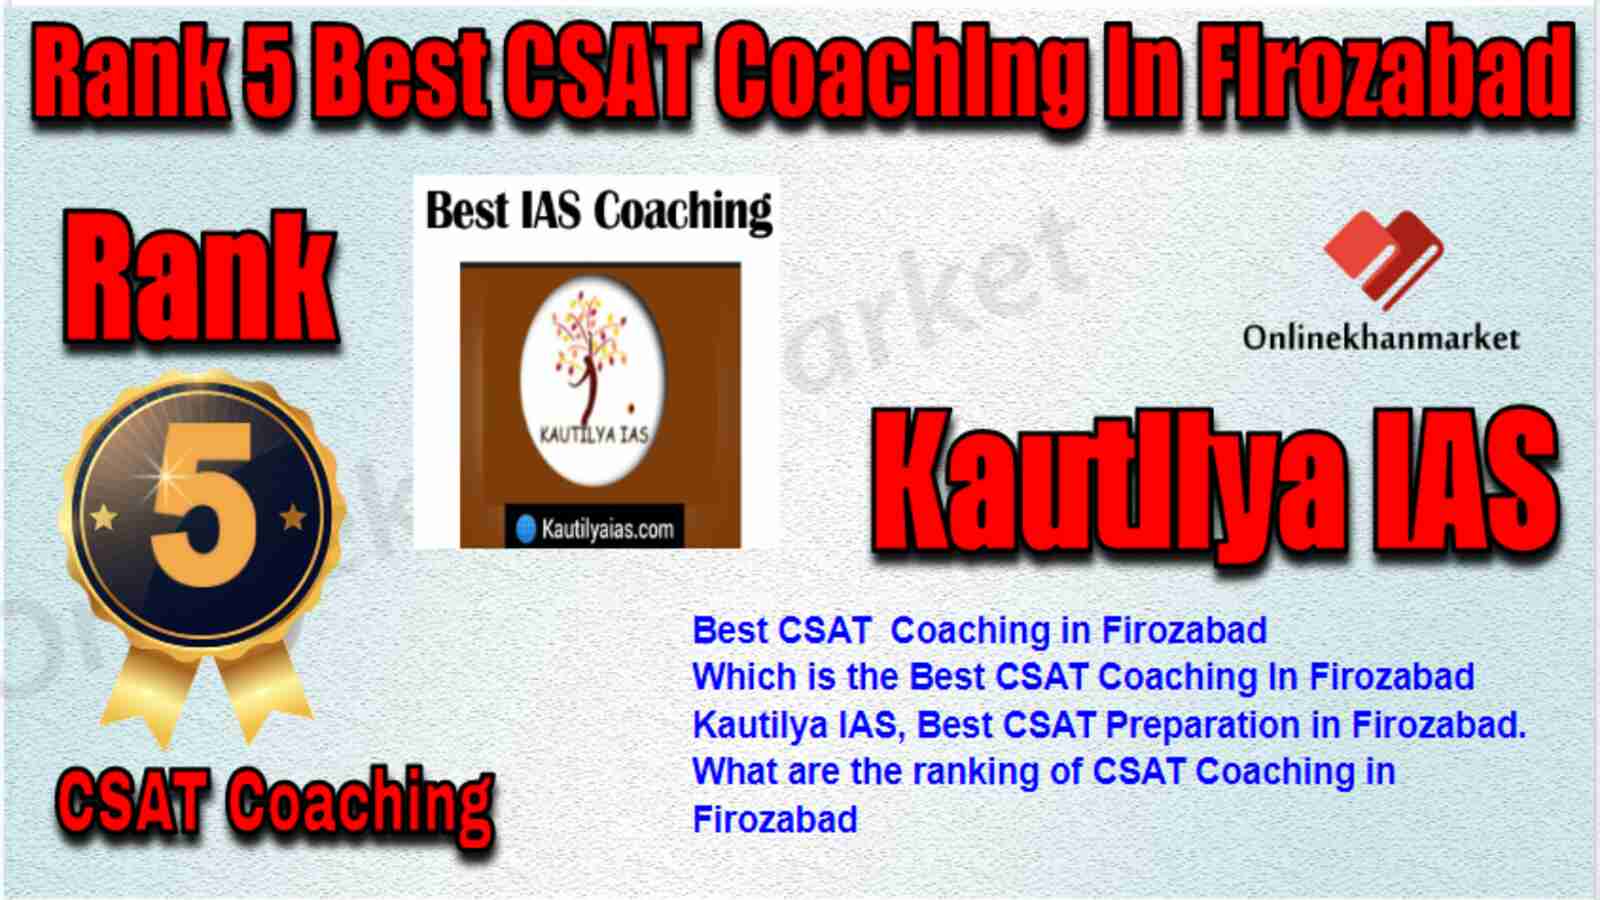 Rank 5 Best CSAT Coaching in Firozabad